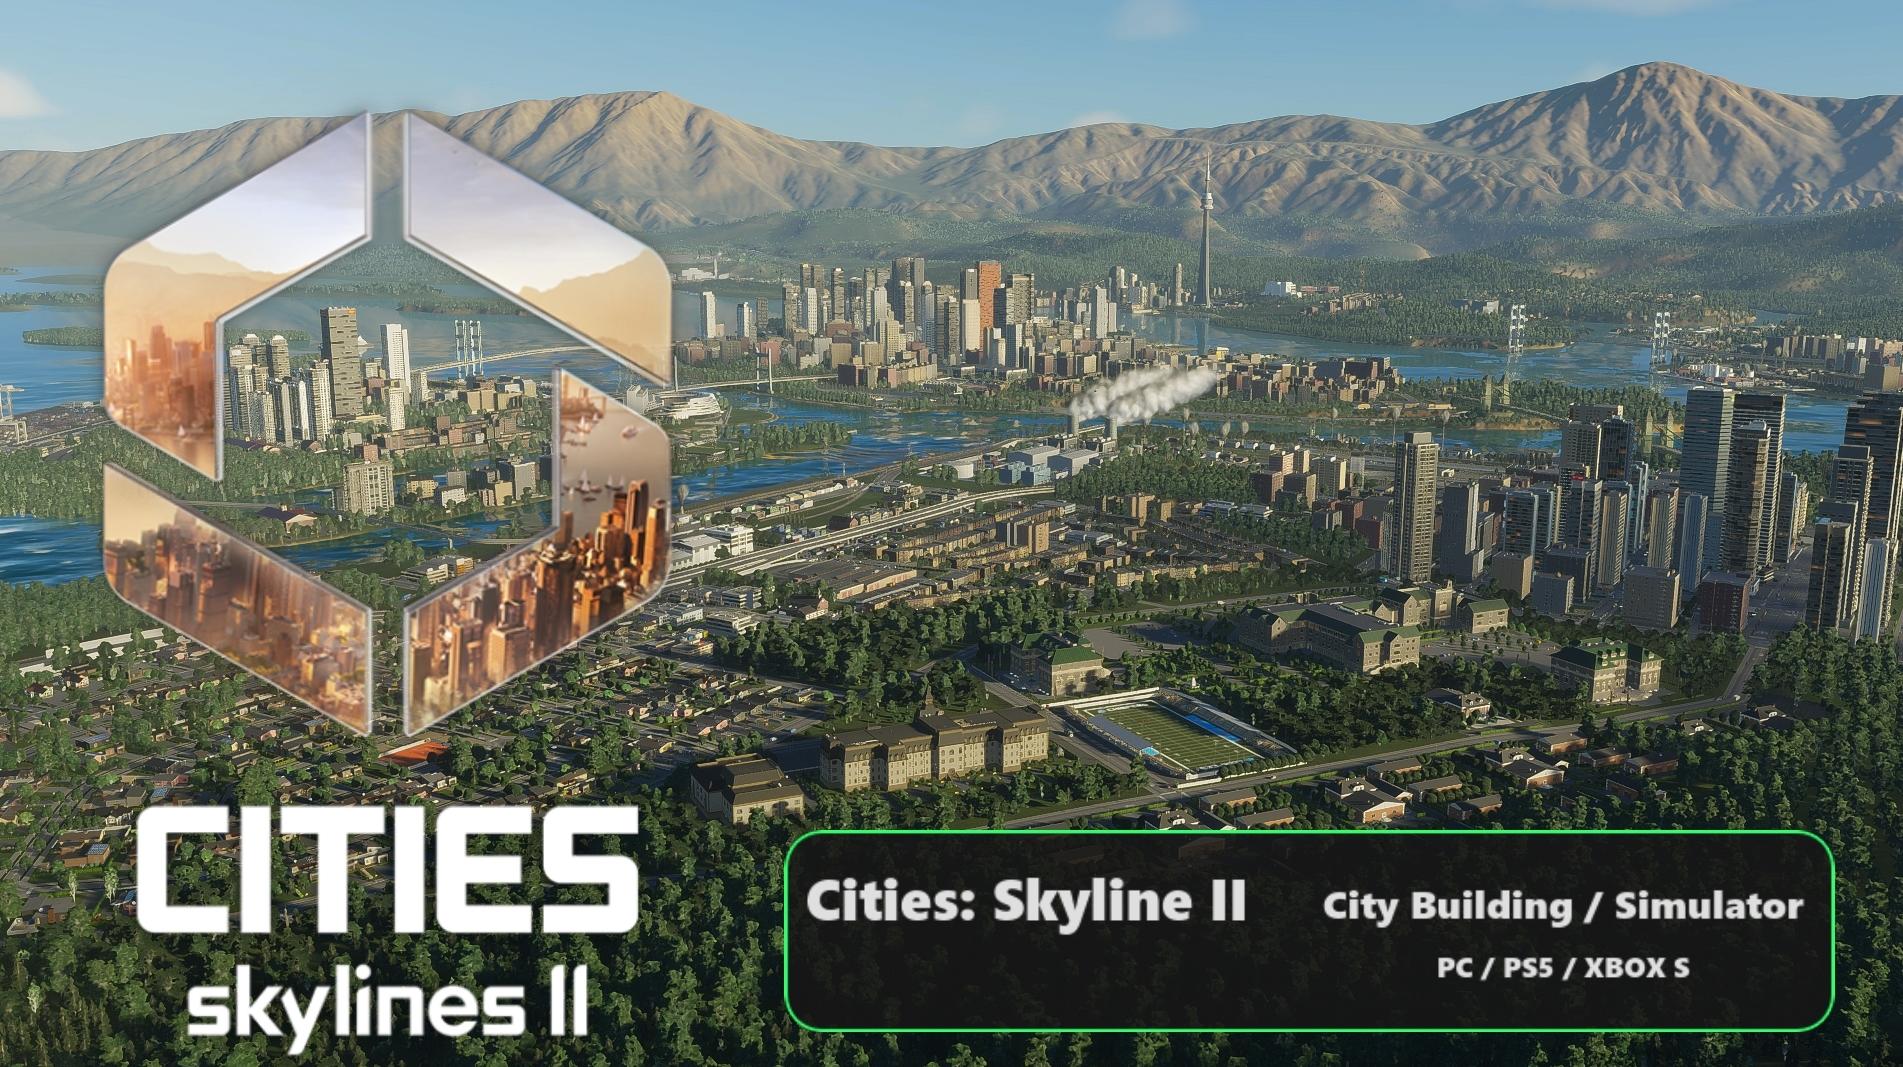 Cities: Skyline II - Poorly Optimized